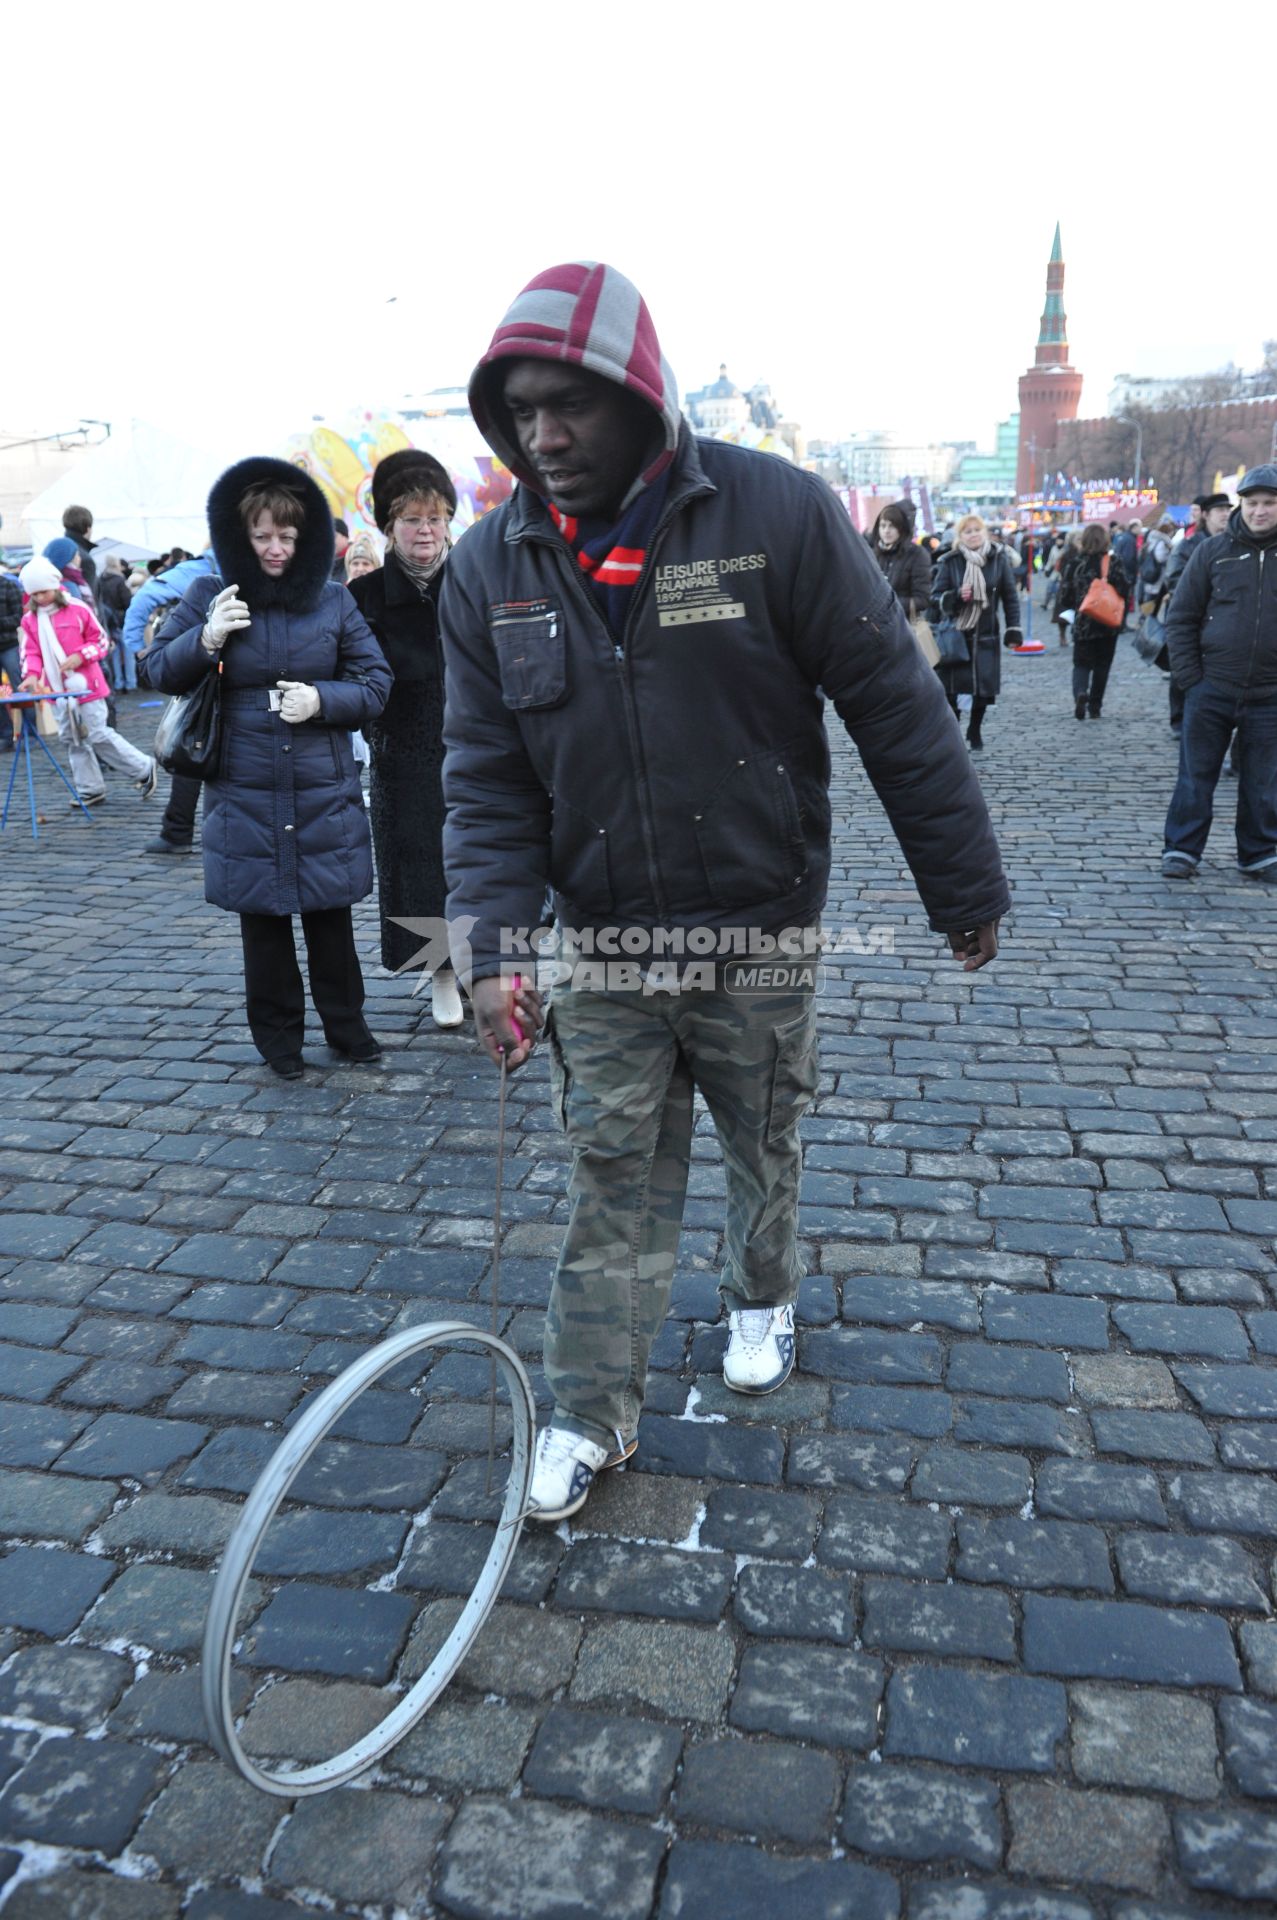 Празнование масленицы в масленичном городке на Васильевском спуске Москва 4 марта 2011 года